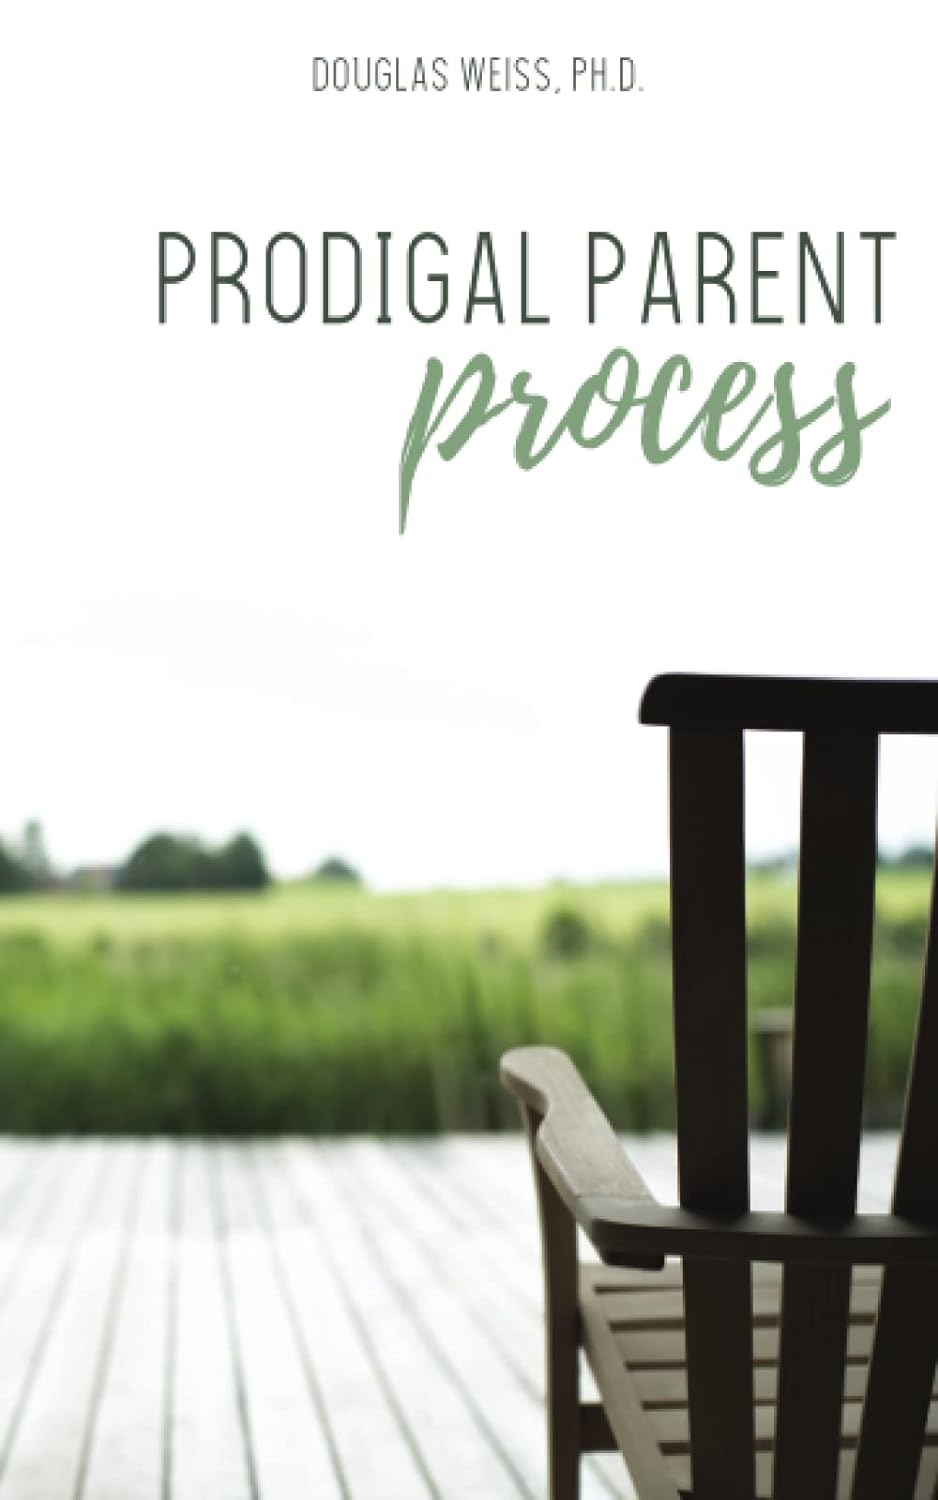 Prodigal Parent Process